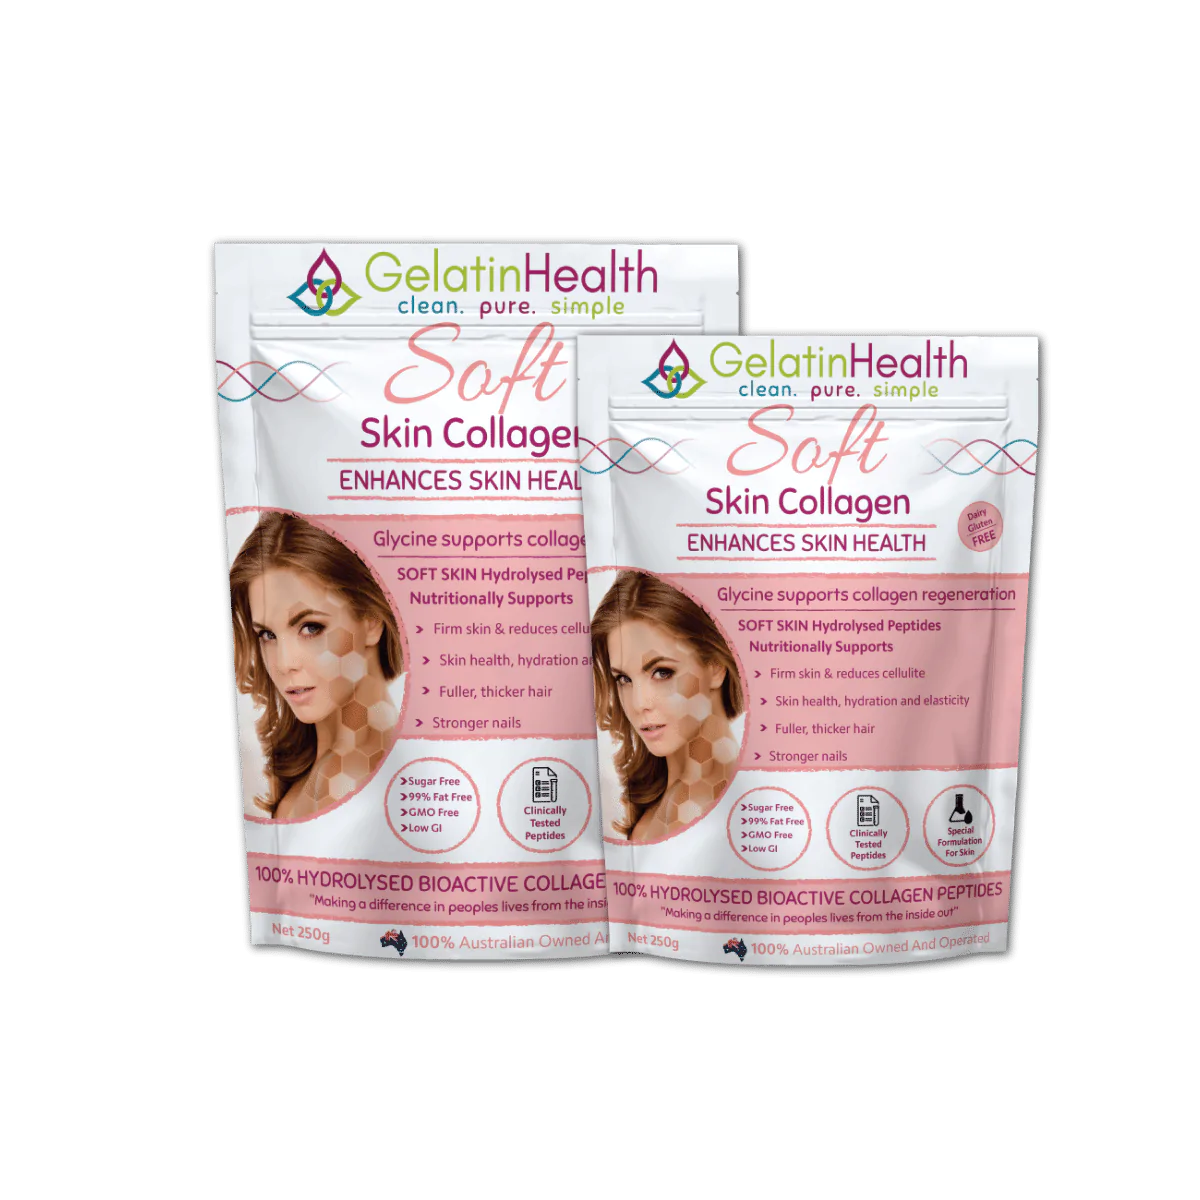 Gelatin Health Soft Skin Collagen